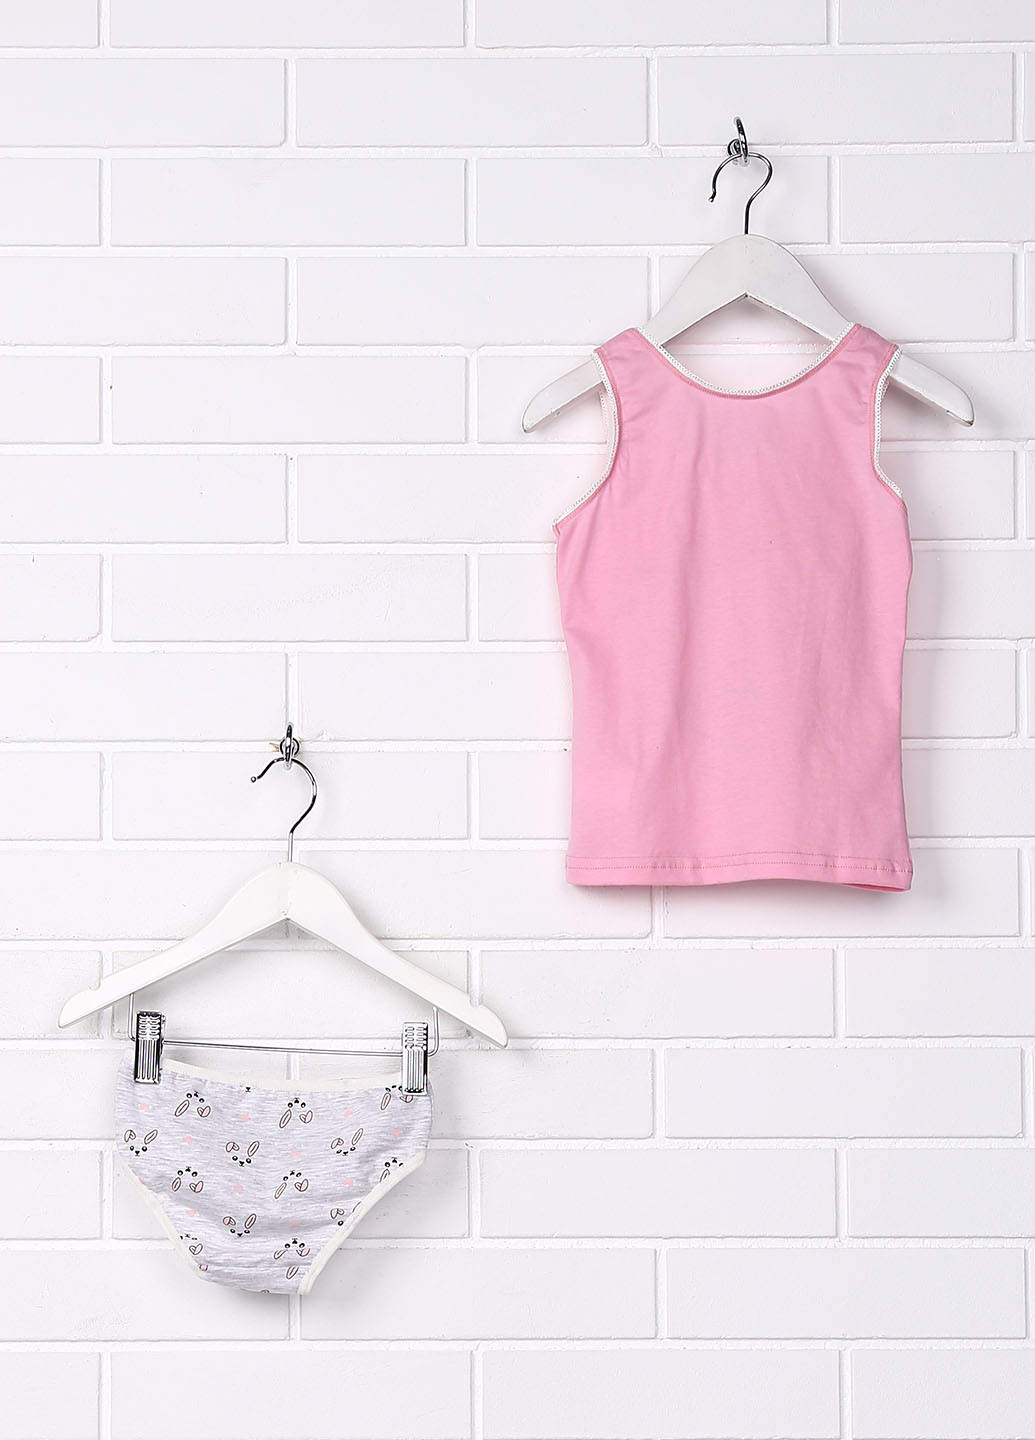 Светло-розовый демисезонный комплект (майка, трусики) Фабрика наш одяг